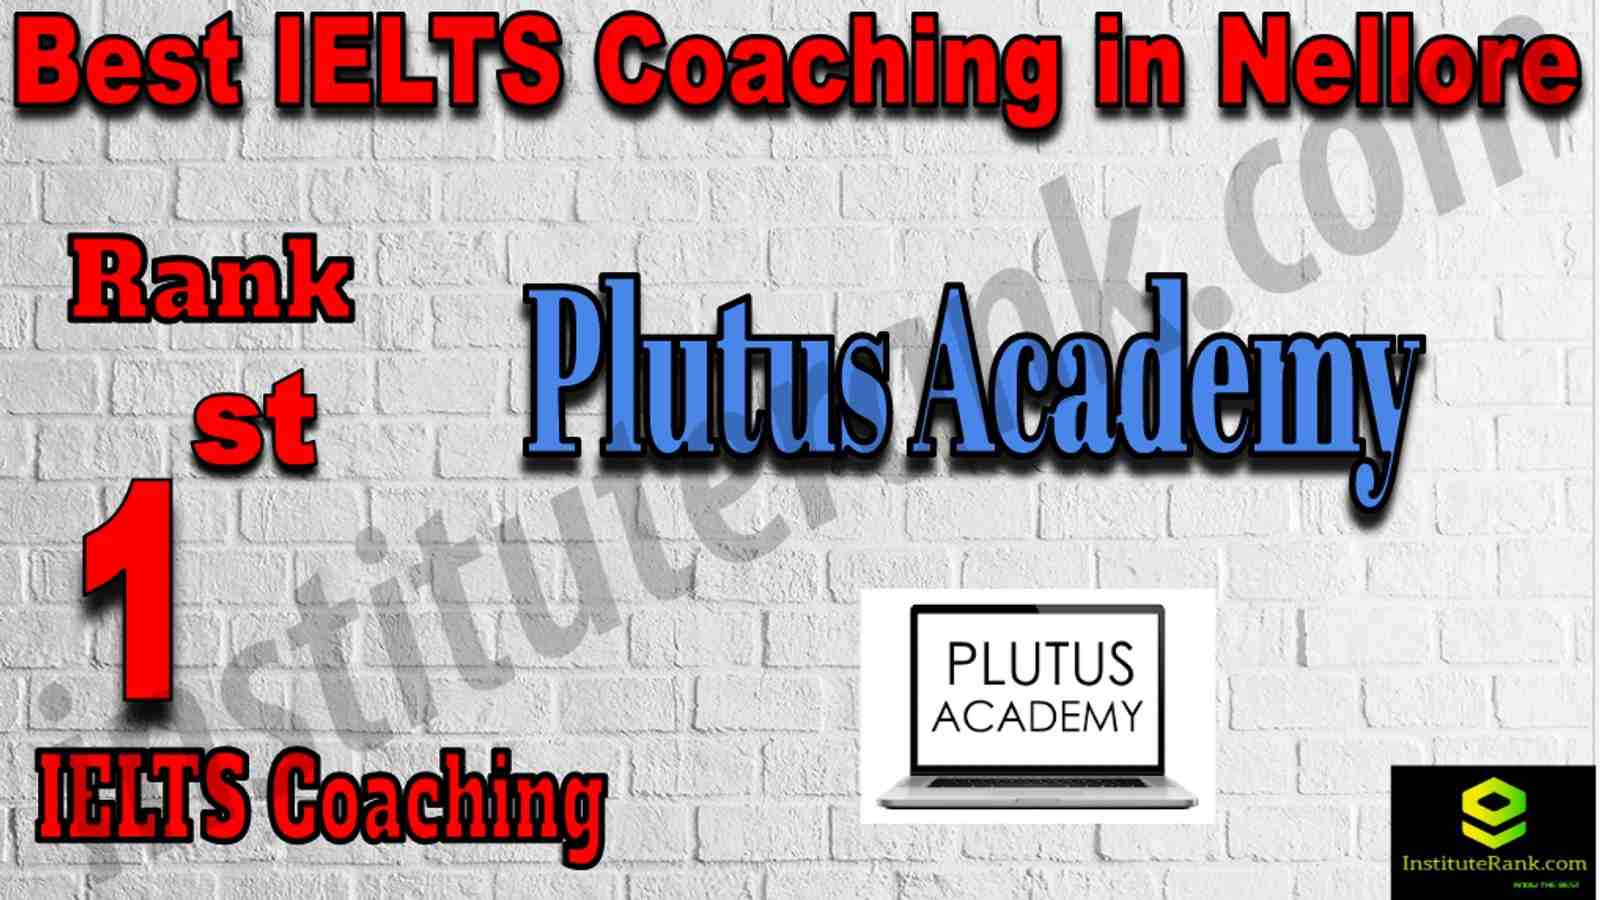 1st Best IELTS Coaching in Nellore